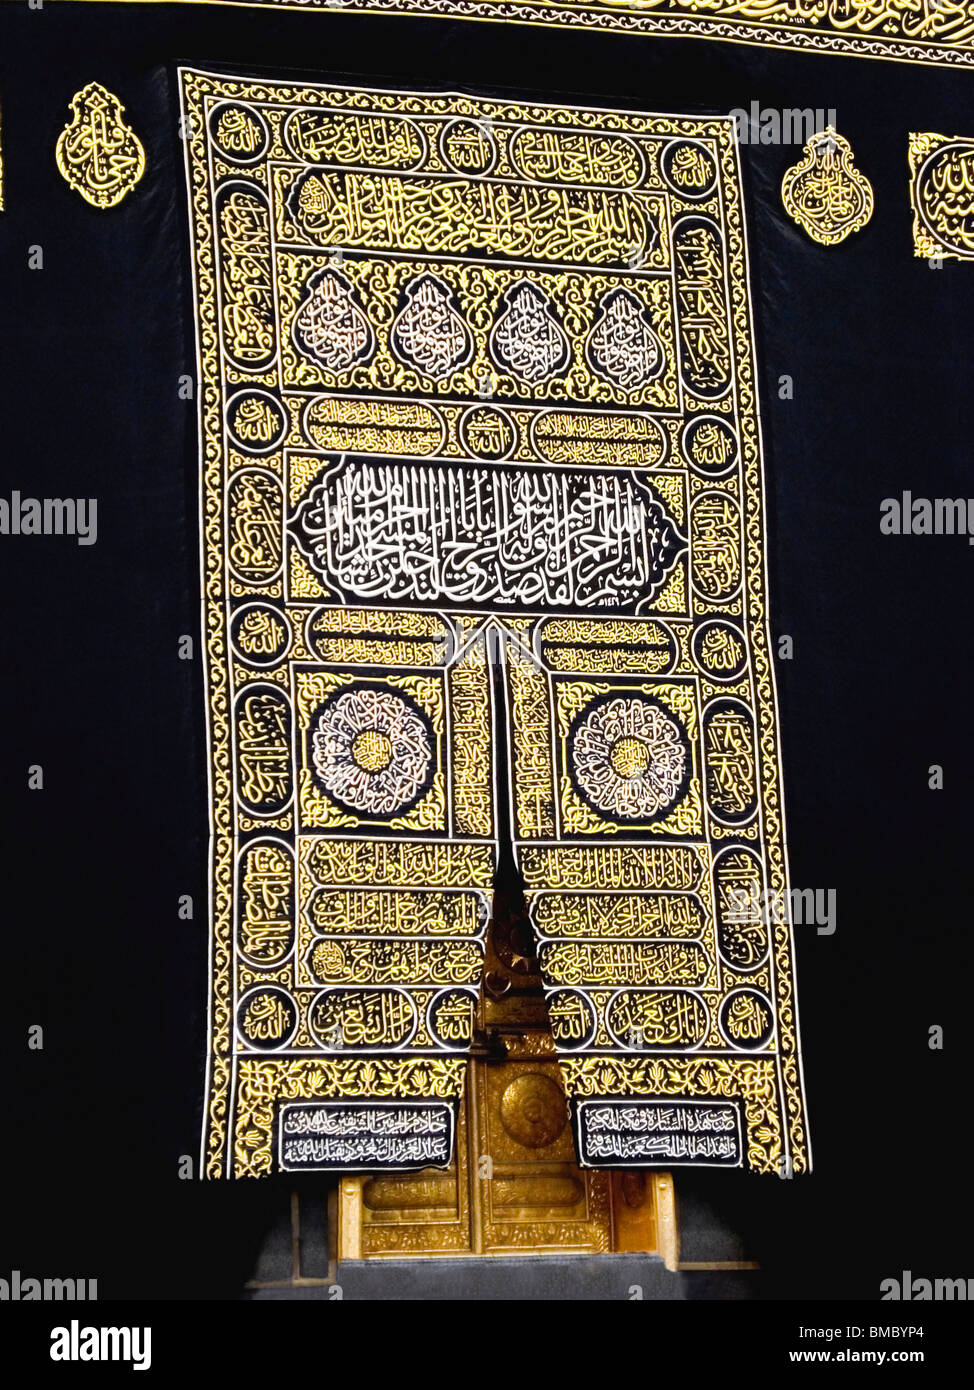 Close-up de texte religieux islamique, la mosquée Al-Haram, Kaaba, La Mecque, Arabie Saoudite Banque D'Images